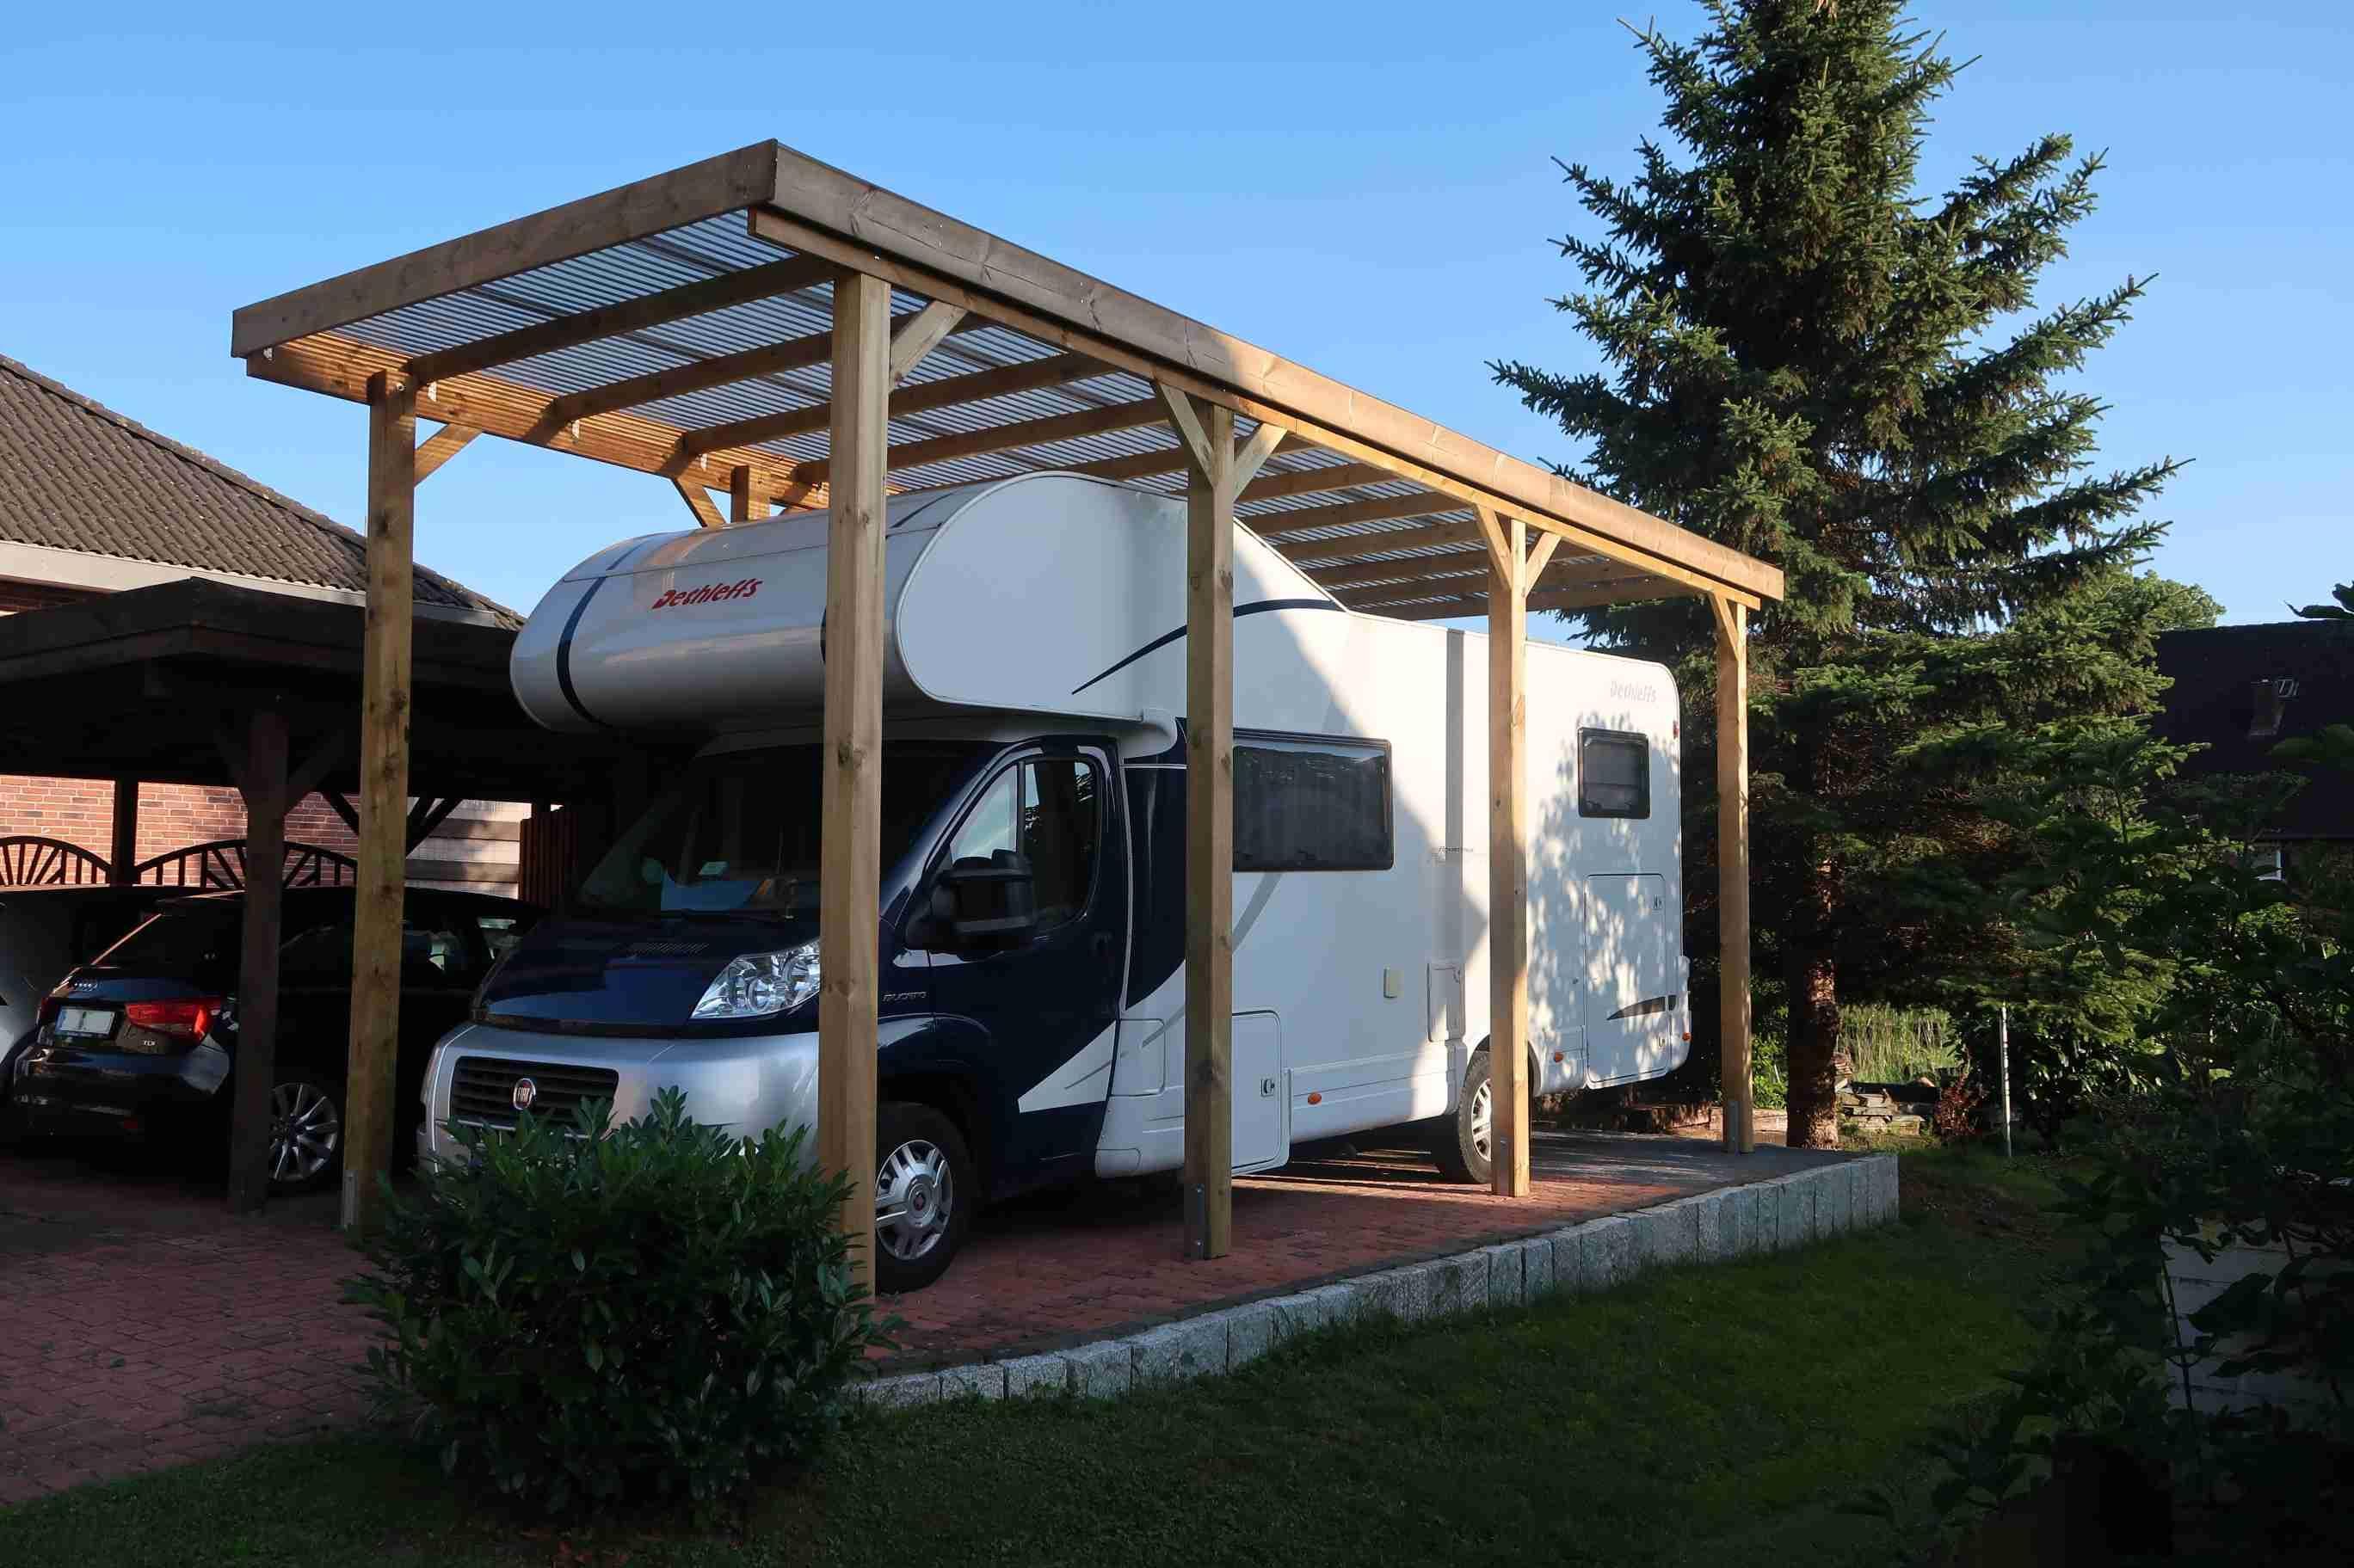 Eine Garage oder Stellplatz für eine mobile Garage in